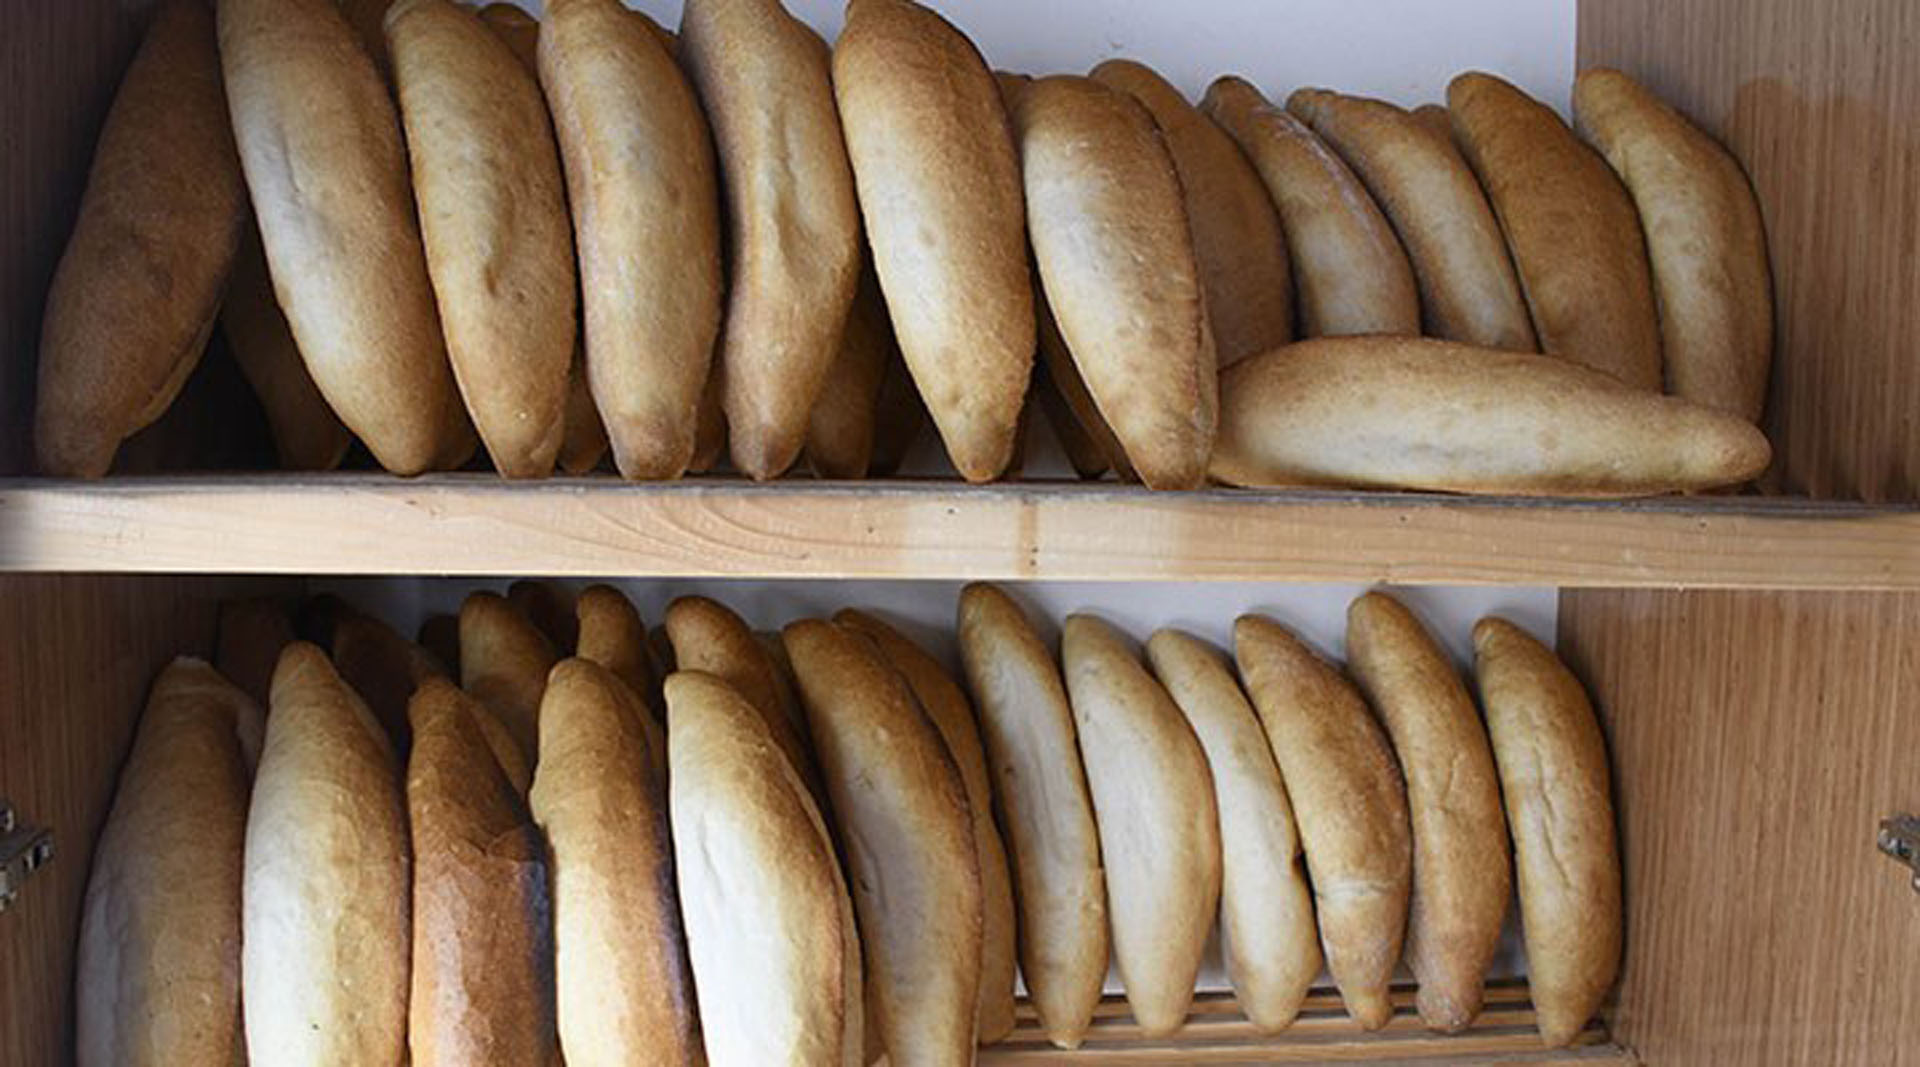 İstanbul'da ekmek 5 lira olacak denilmişti! Ekmeği 3 liradan fazla satan fırıncılara rekor ceza geliyor!